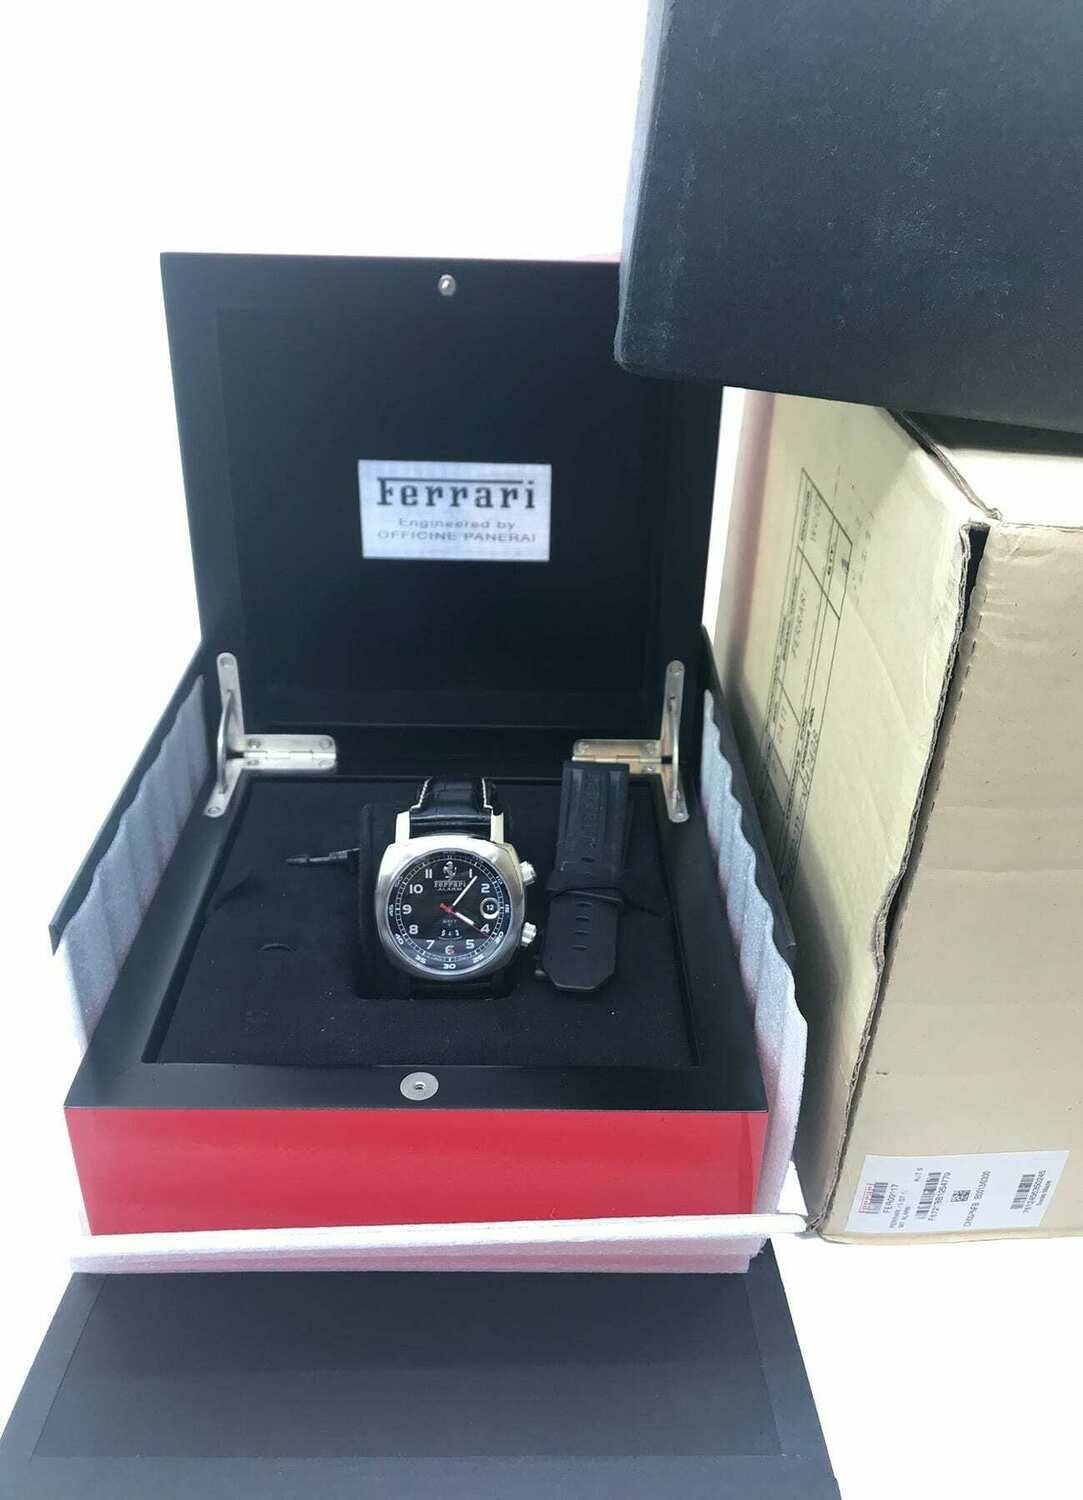 Panerai Ferrari Granturismo GMT-Alarm FER00017 - Exquisite Timepieces